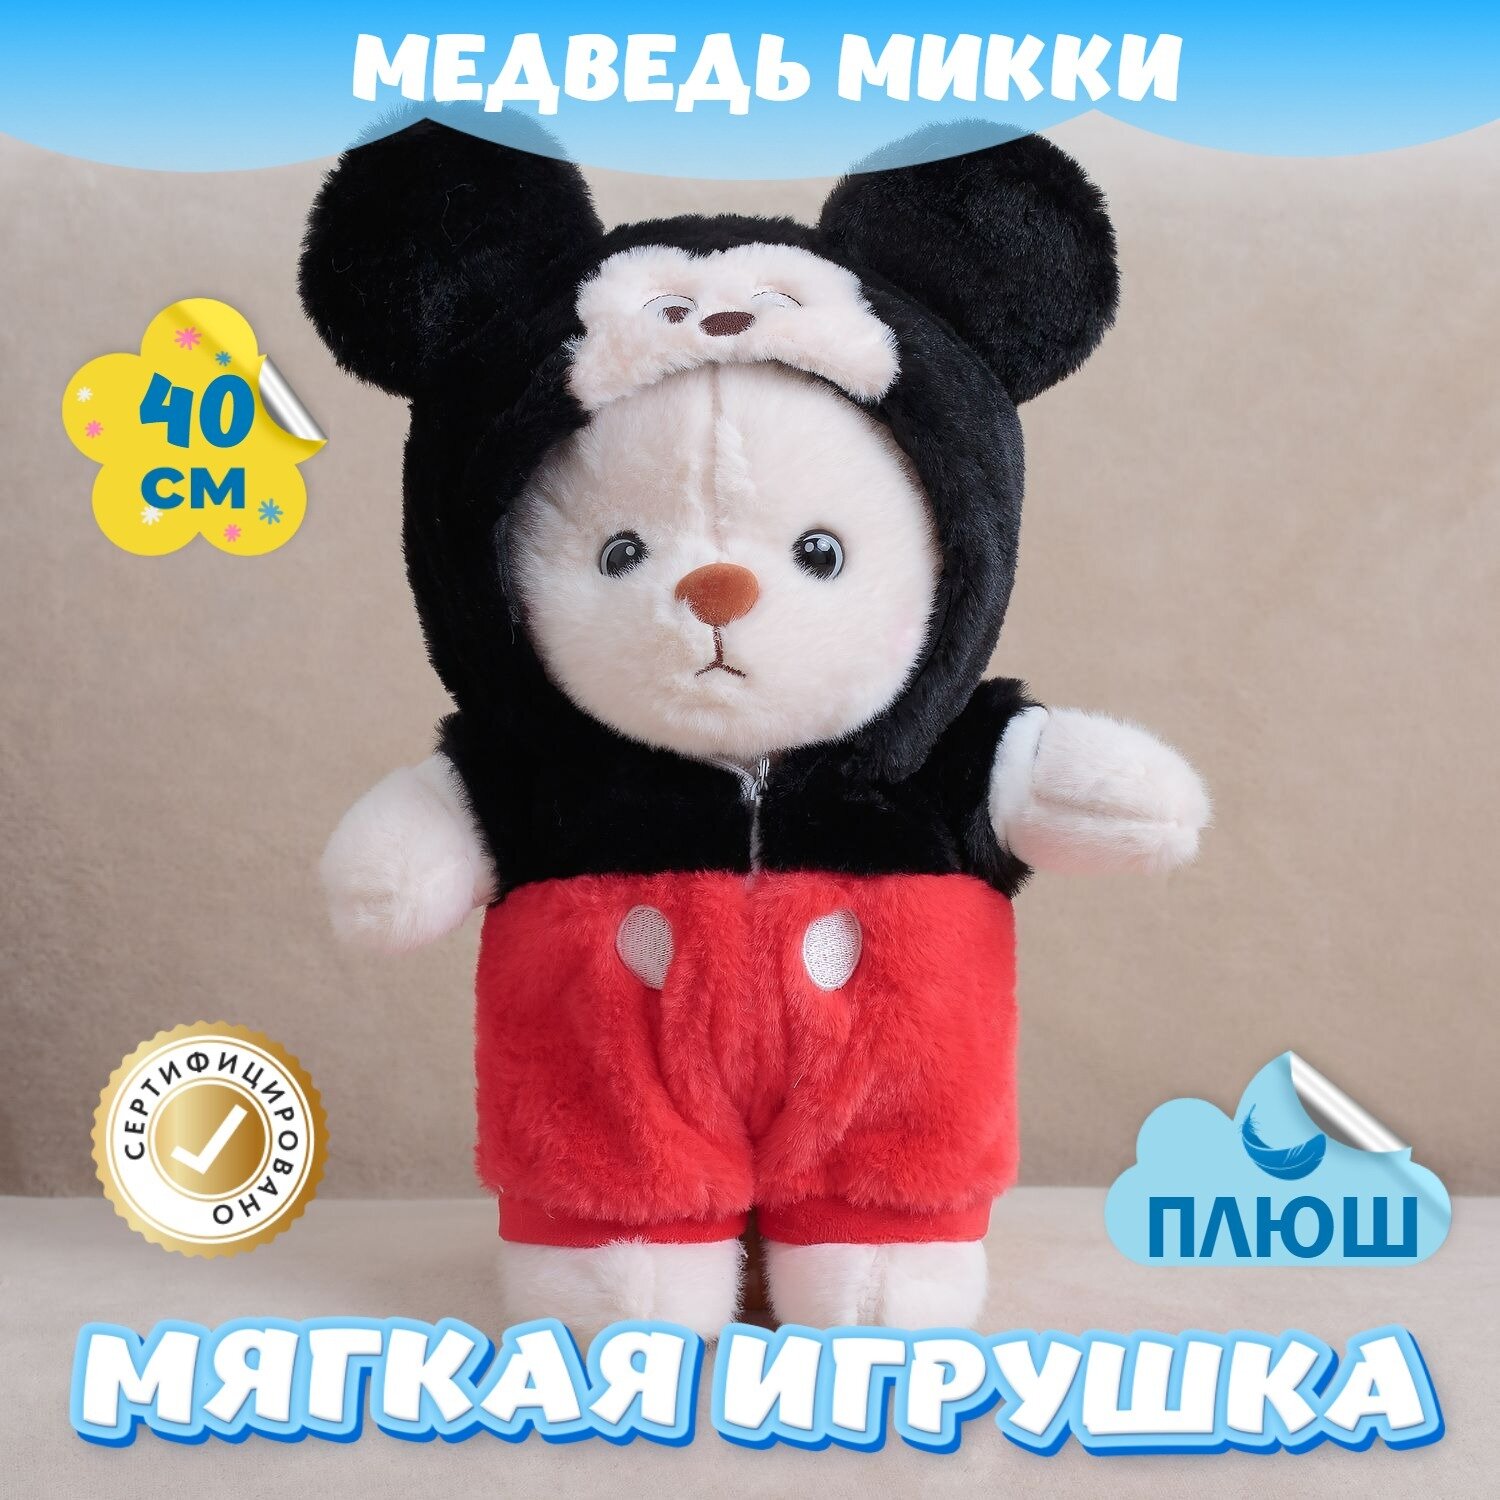 Мягкая игрушка Медведь Микки Маус в пижаме для девочек мальчиков / Плюшевый Мишка для малышей KiDWoW черный 40см